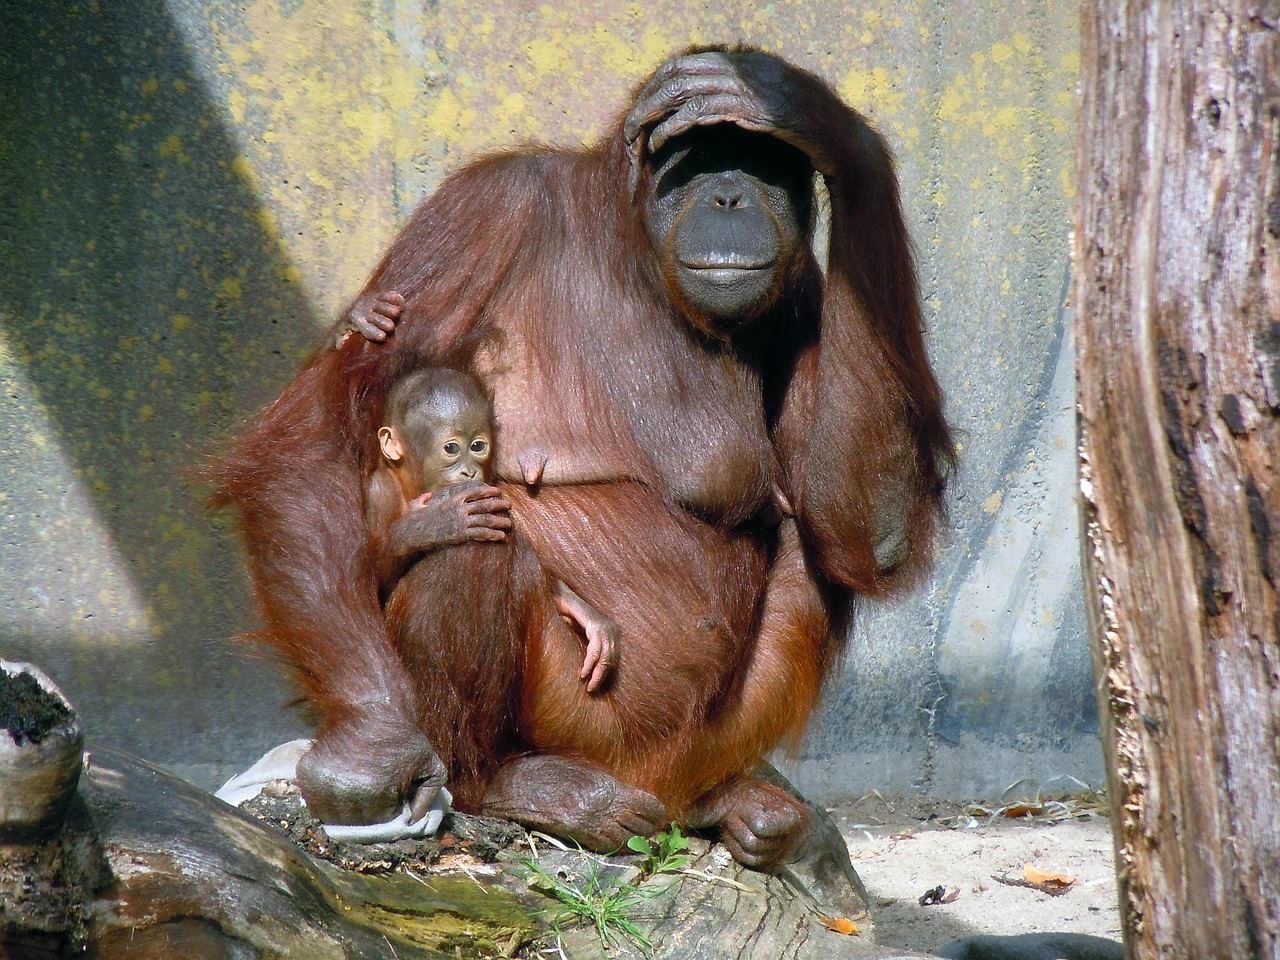 orang utan ape monkey family free photo